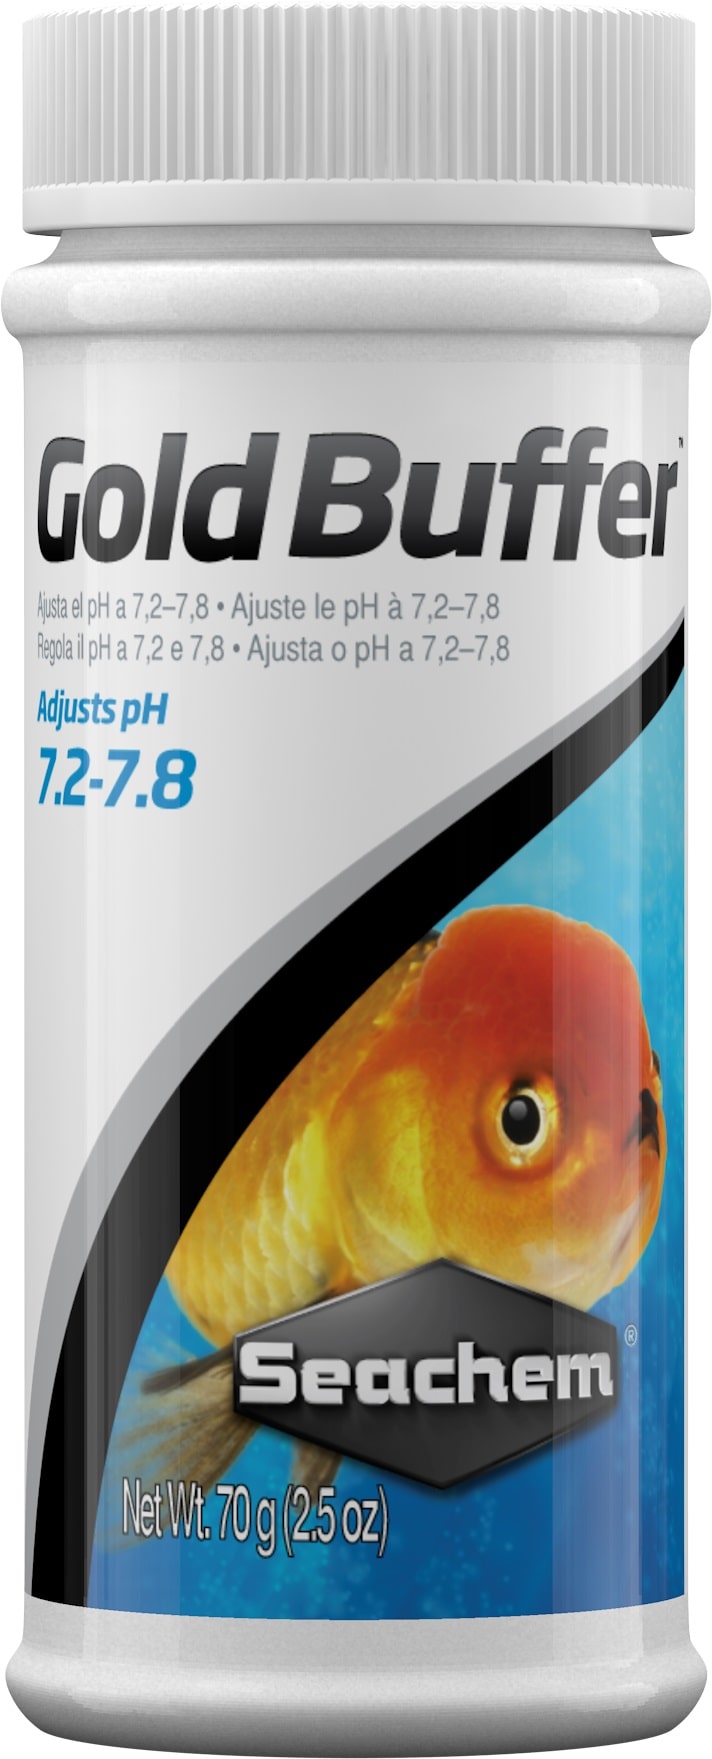 SEACHEM Gold Buffer 70 gr maintien le pH entre 7.2 et 7.8 pour les poissons rouges et voiles